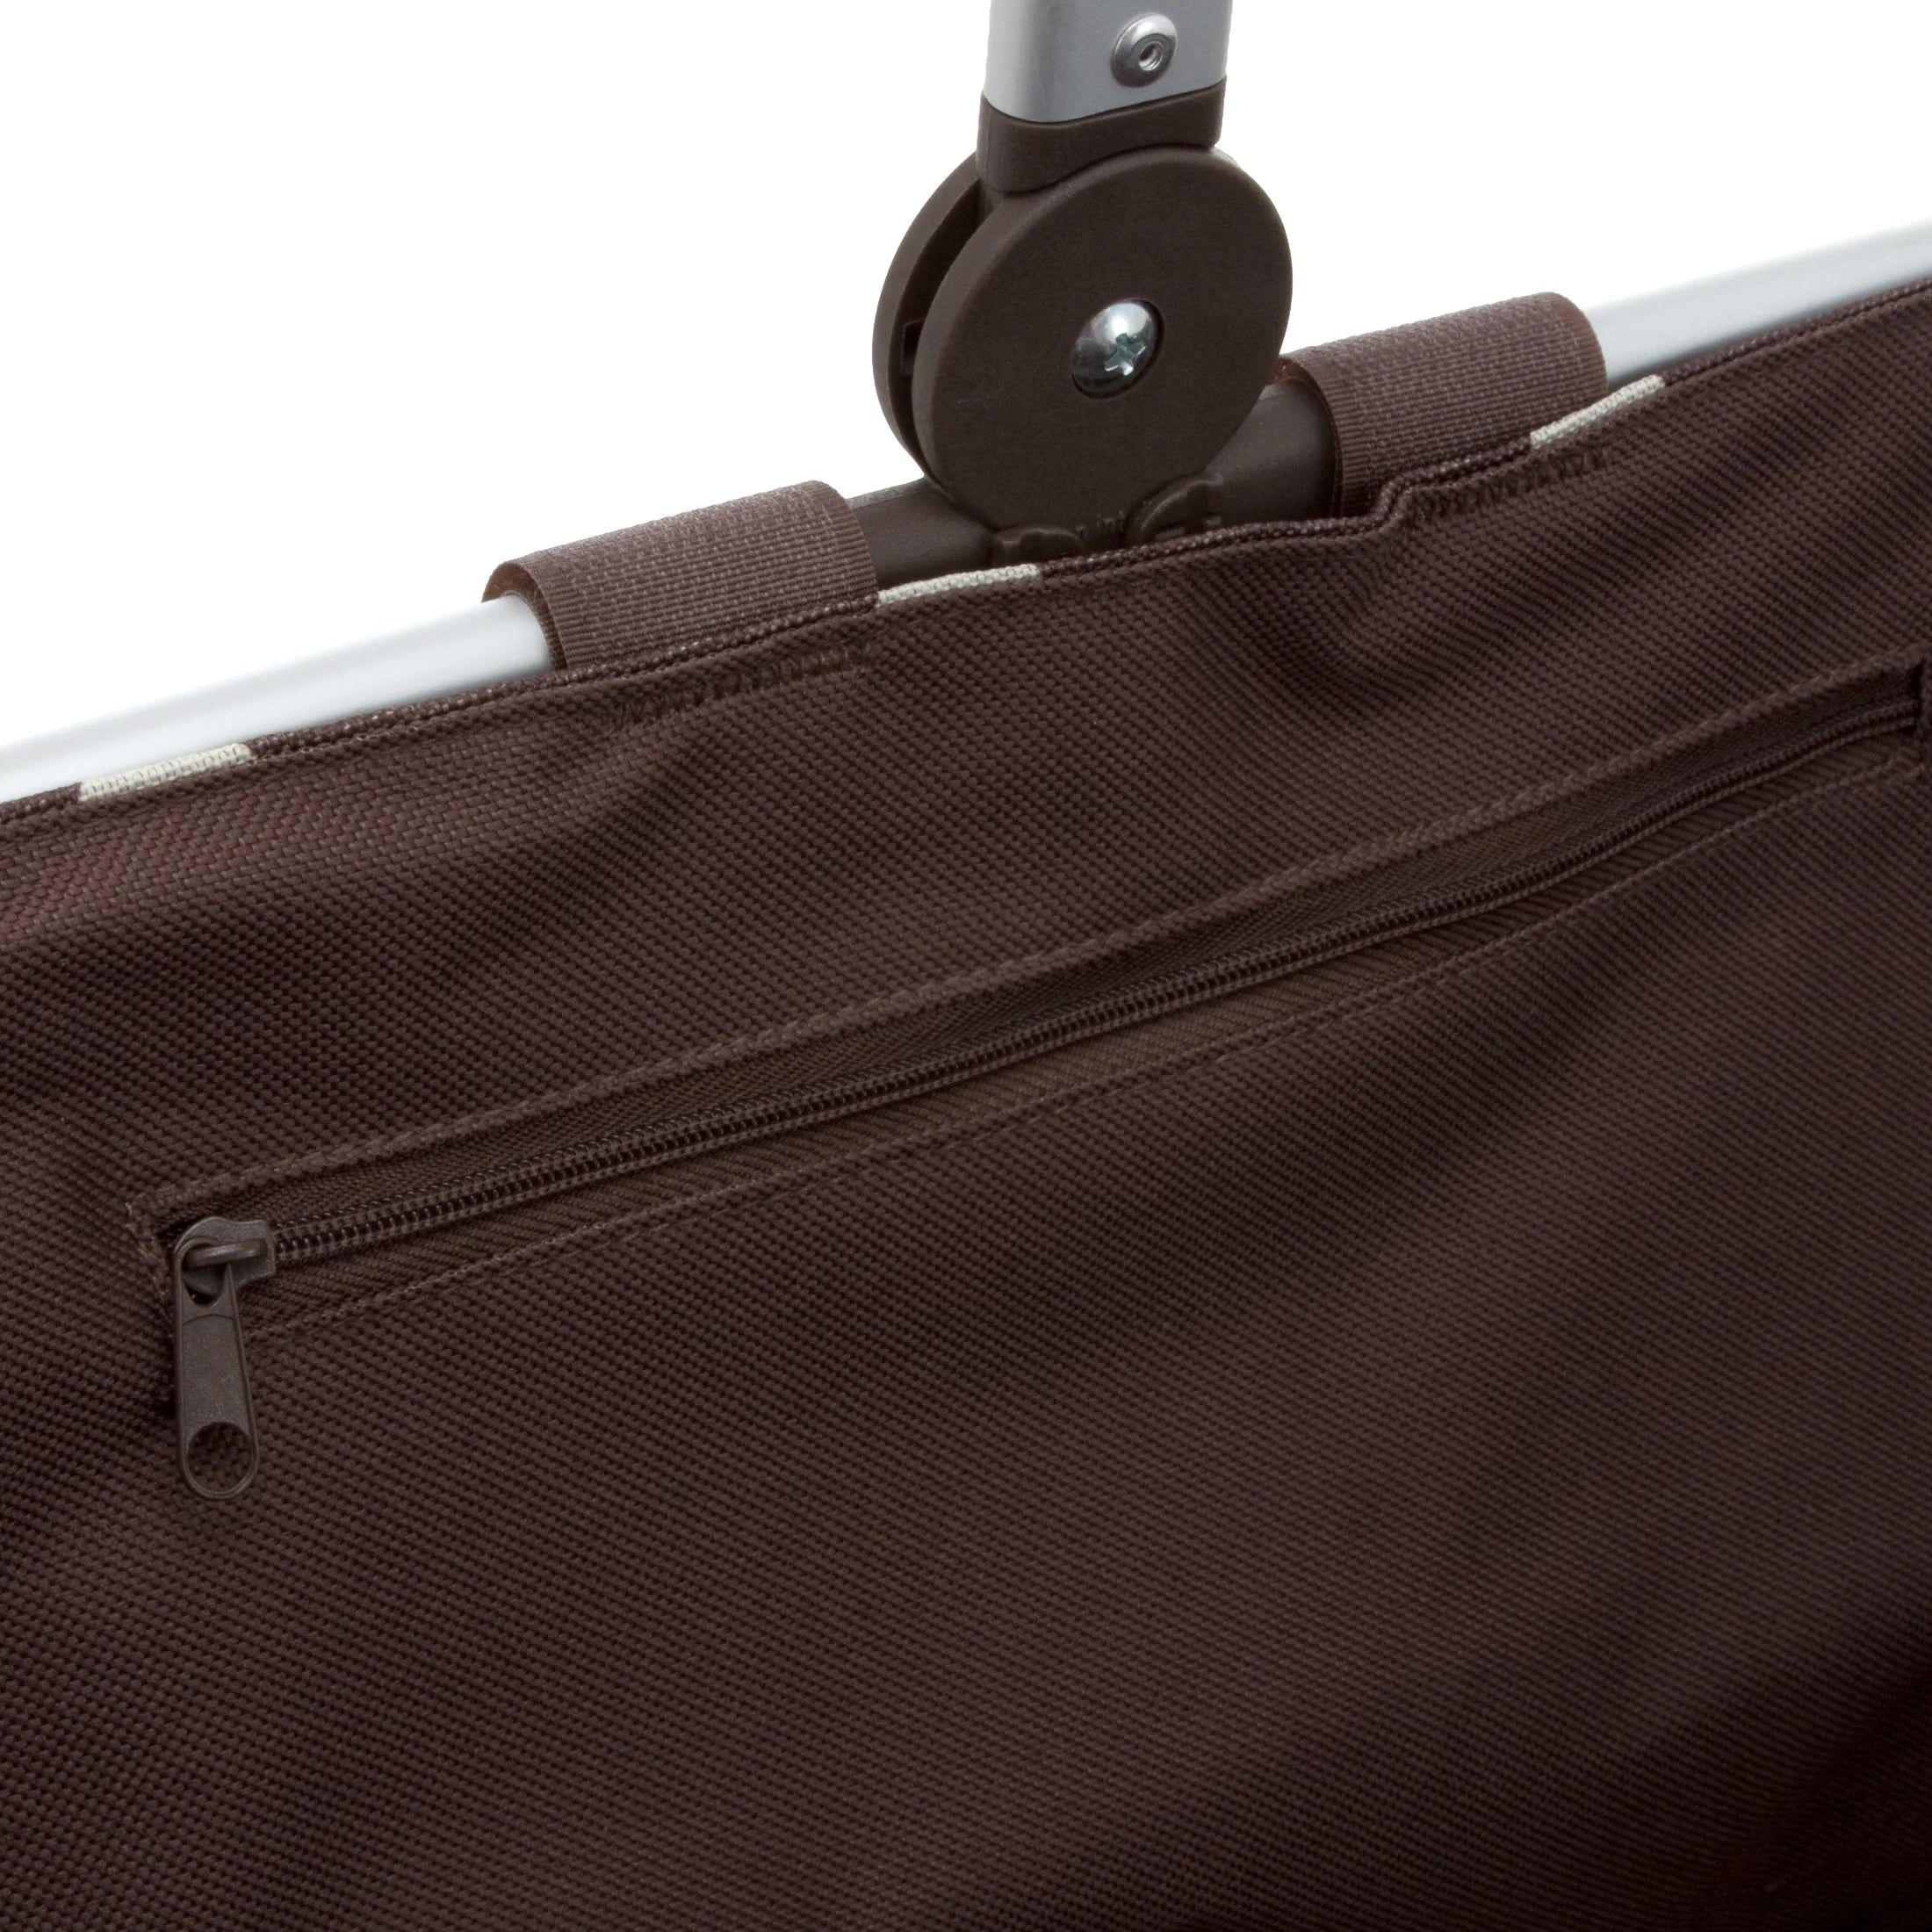 Reisenthel Shopping Carrybag Einkaufskorb 48 cm - black